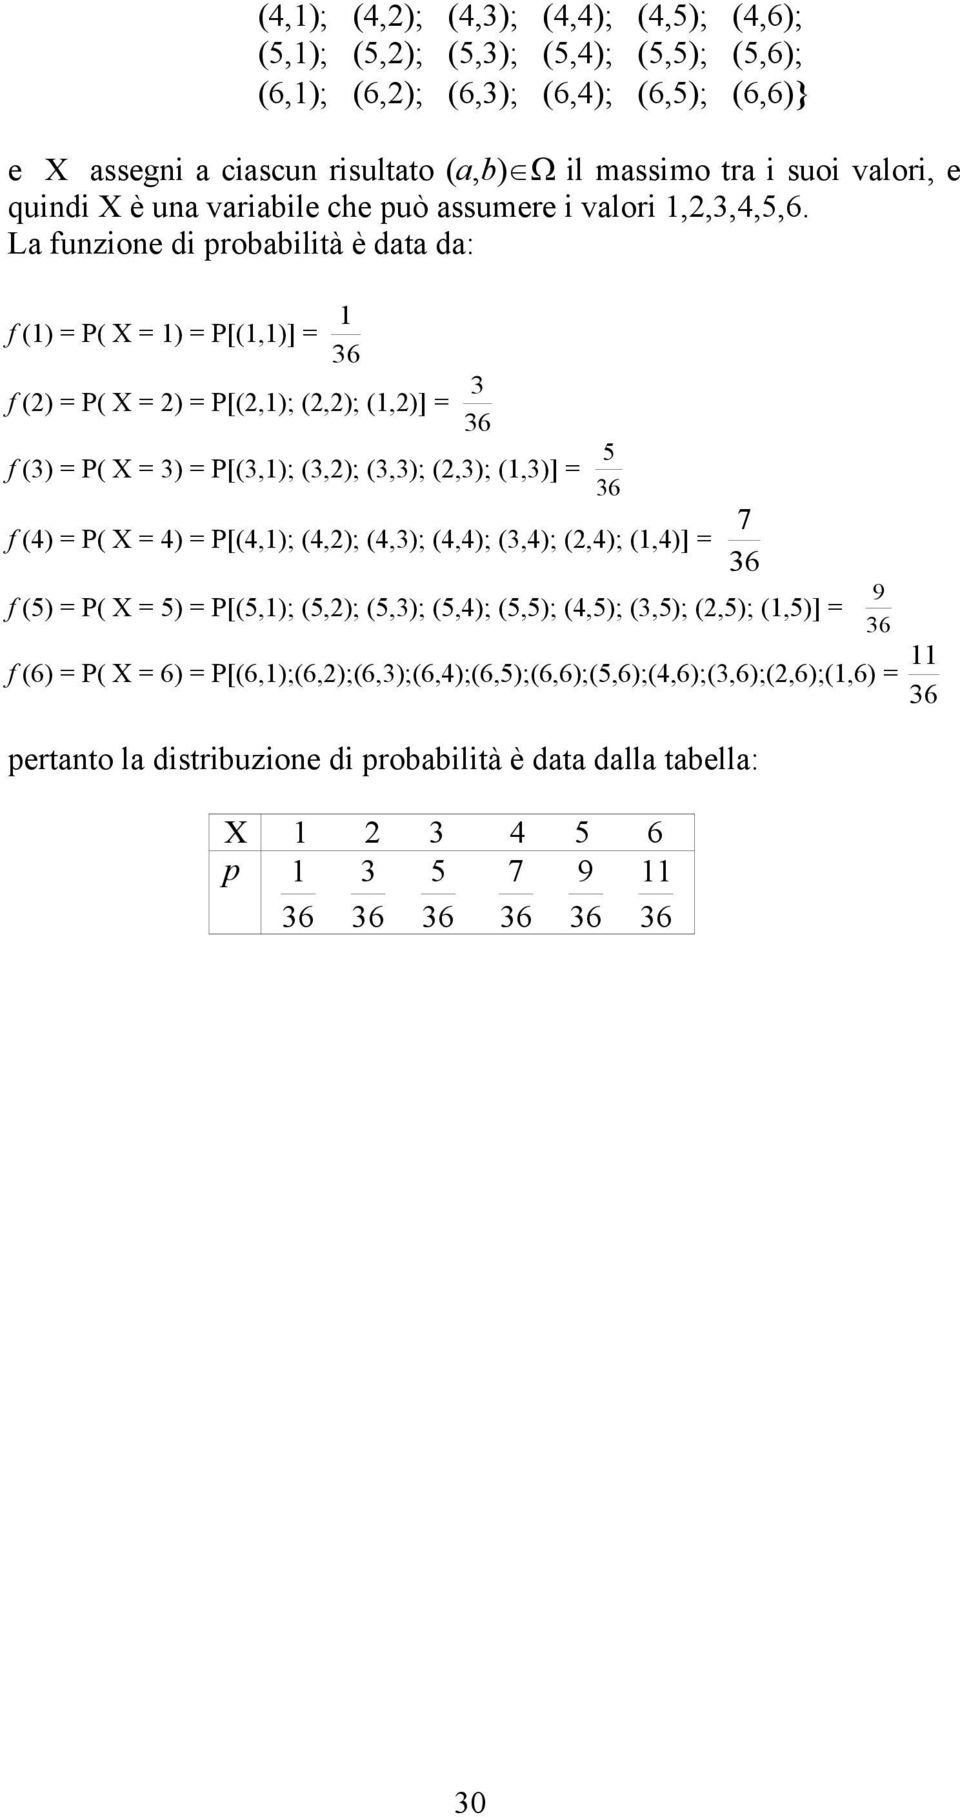 La funzione di probabilità è data da: f (1) = P( X = 1) = P[(1,1)] = 1 36 f (2) = P( X = 2) = P[(2,1); (2,2); (1,2)] = 3 36 f (3) = P( X = 3) = P[(3,1); (3,2); (3,3); (2,3); (1,3)] = 5 36 f (4) = P(